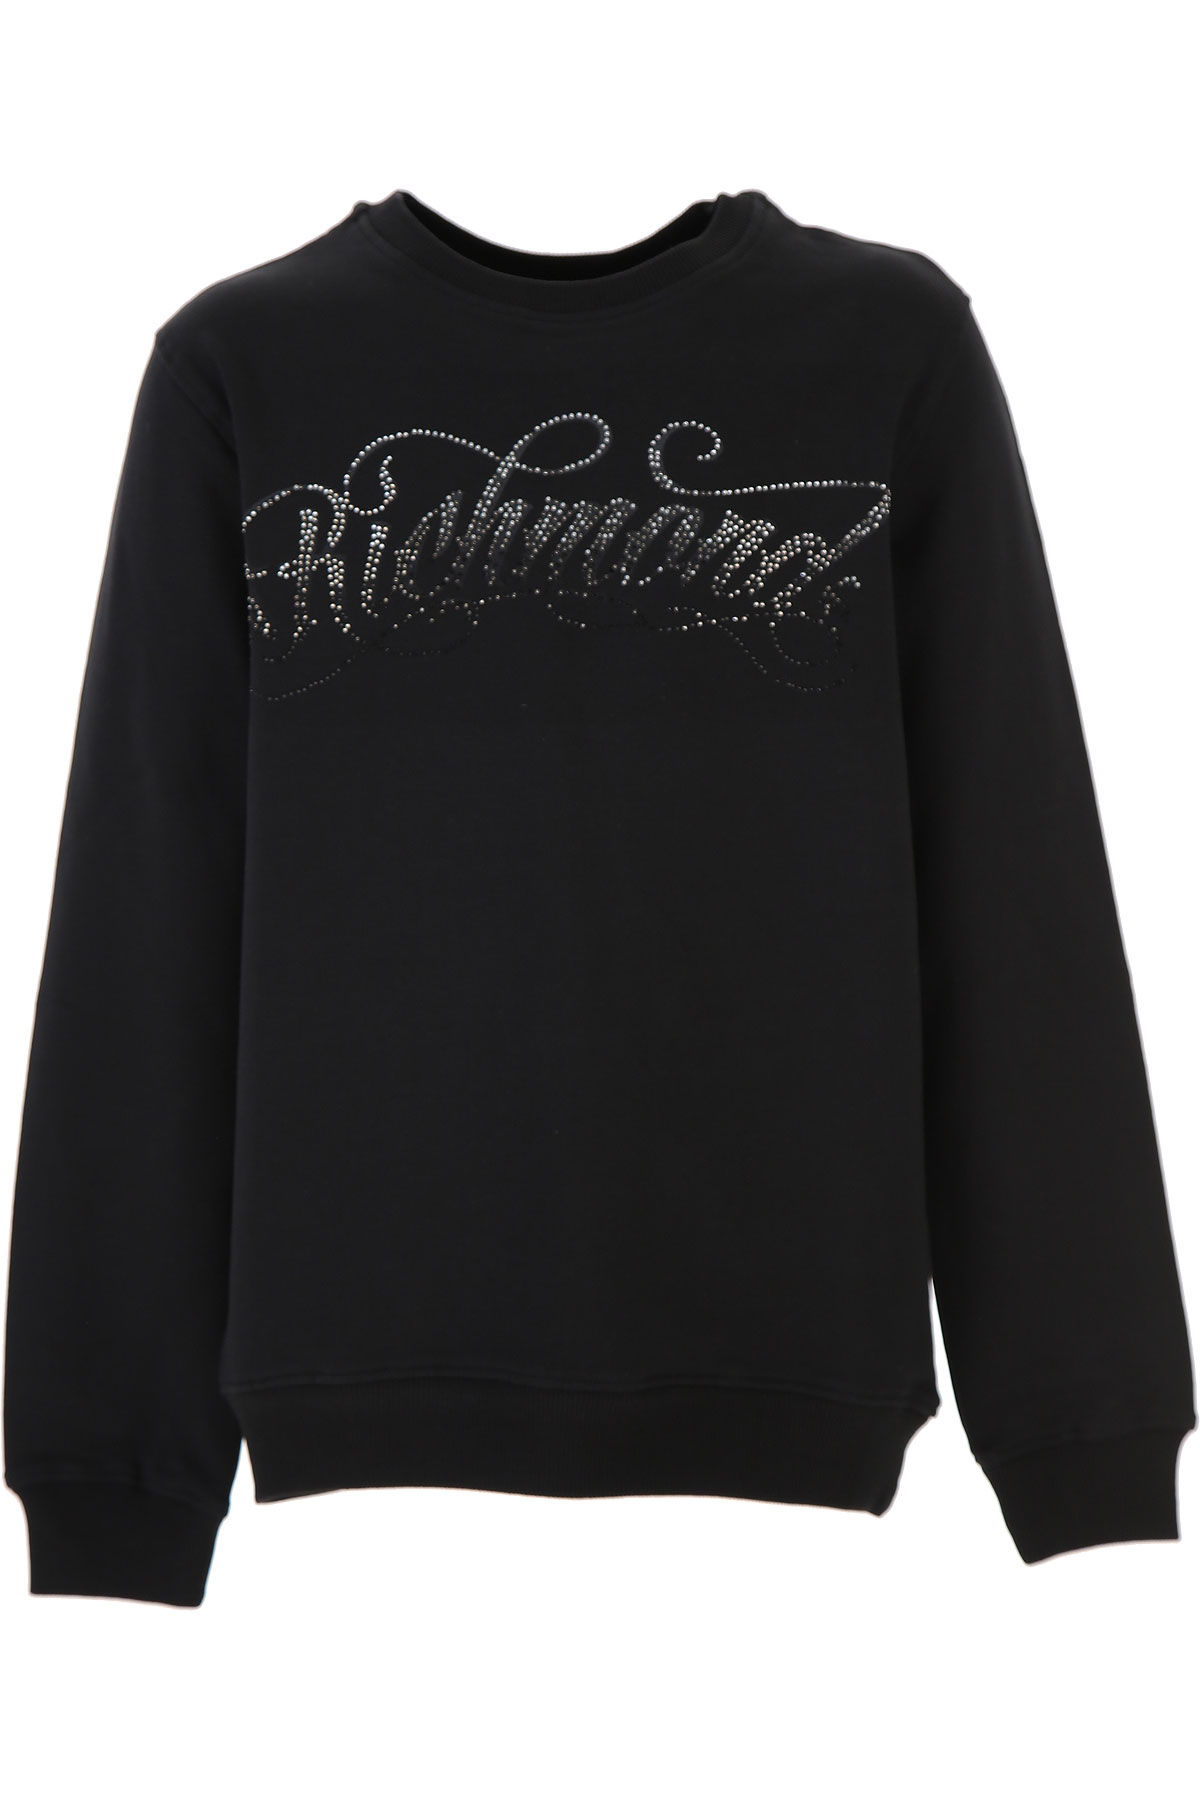 Richmond Kinder Sweatshirt & Kapuzenpullover für Mädchen Günstig im Sale, Schwarz, Baumwolle, 2017, 12Y 14Y